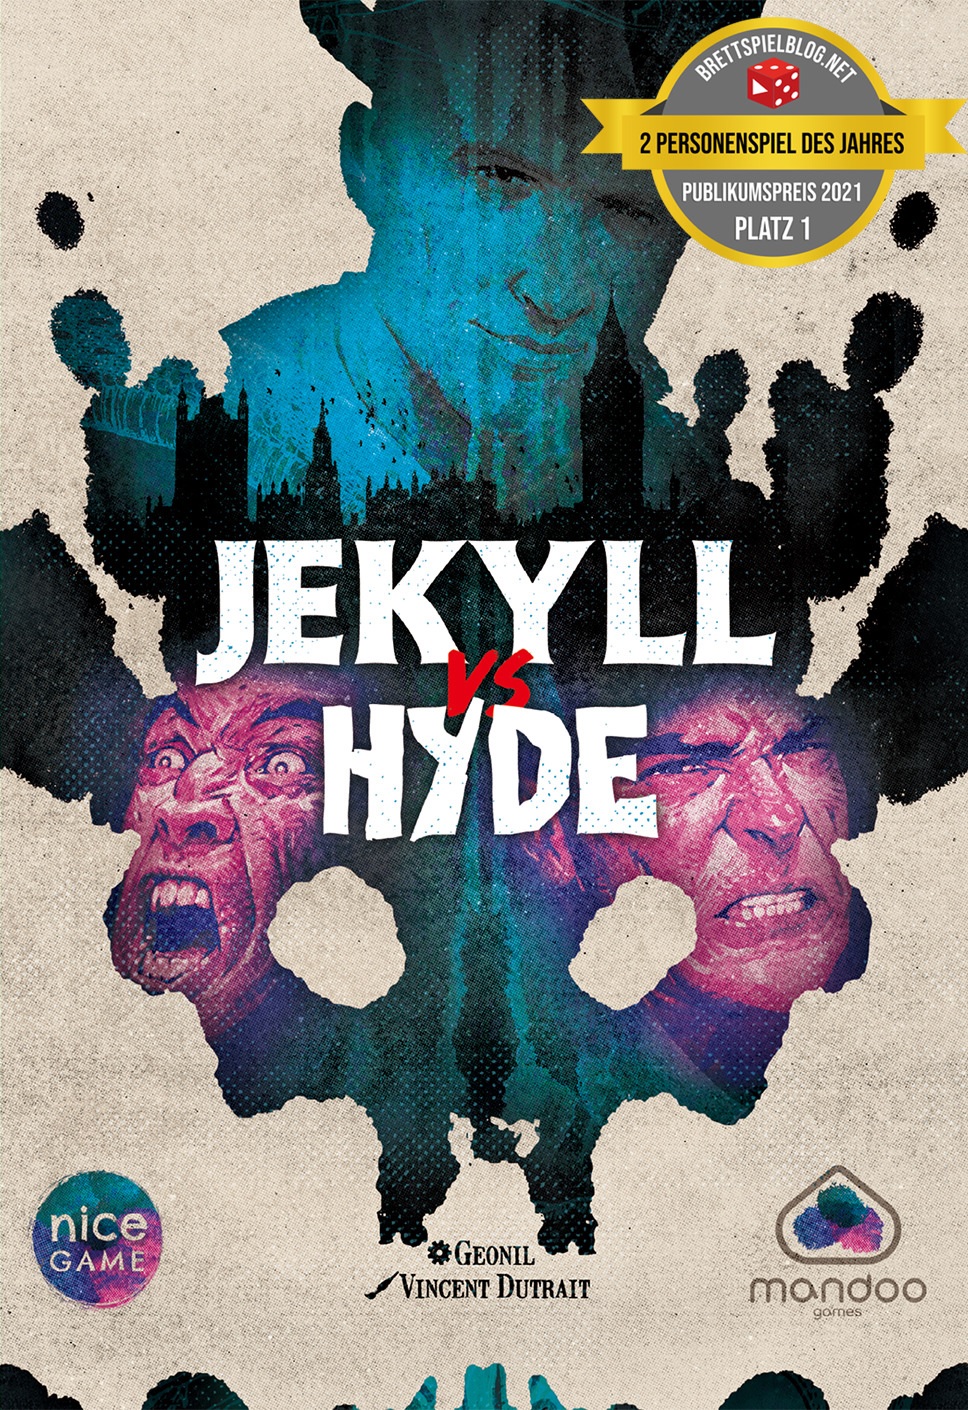 JEKYLL vs. HYDE - Stichspiel für 2 Spieler-/bilder/big/3225901_1.jpg